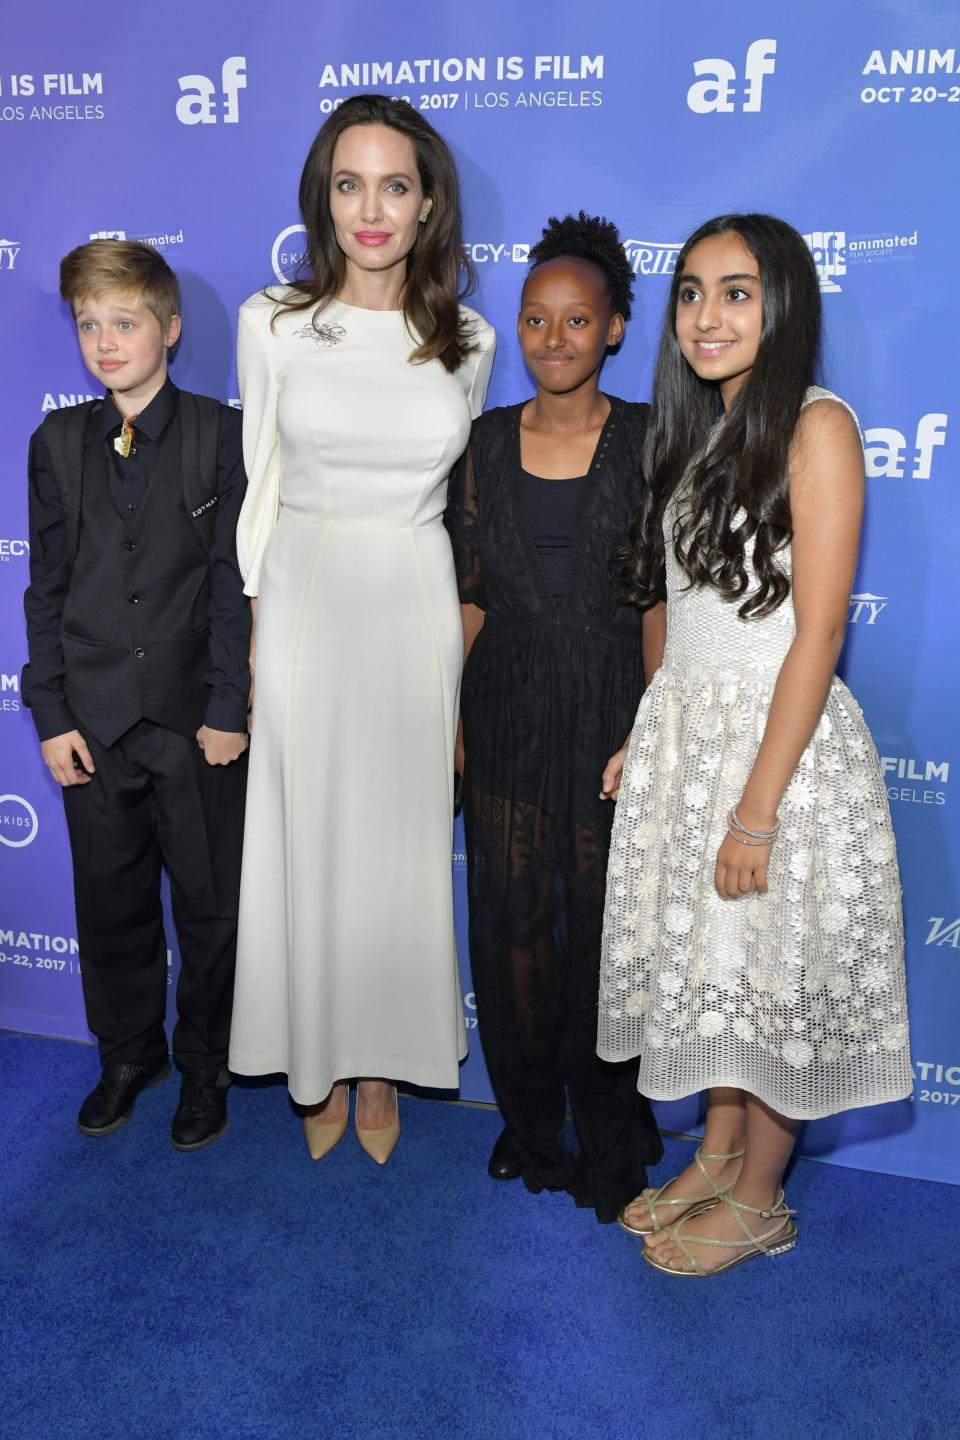 Shiloh Jolie-Pitt, Angelina Jolie, Zahara Jolie-Pitt and Saara Chaudry